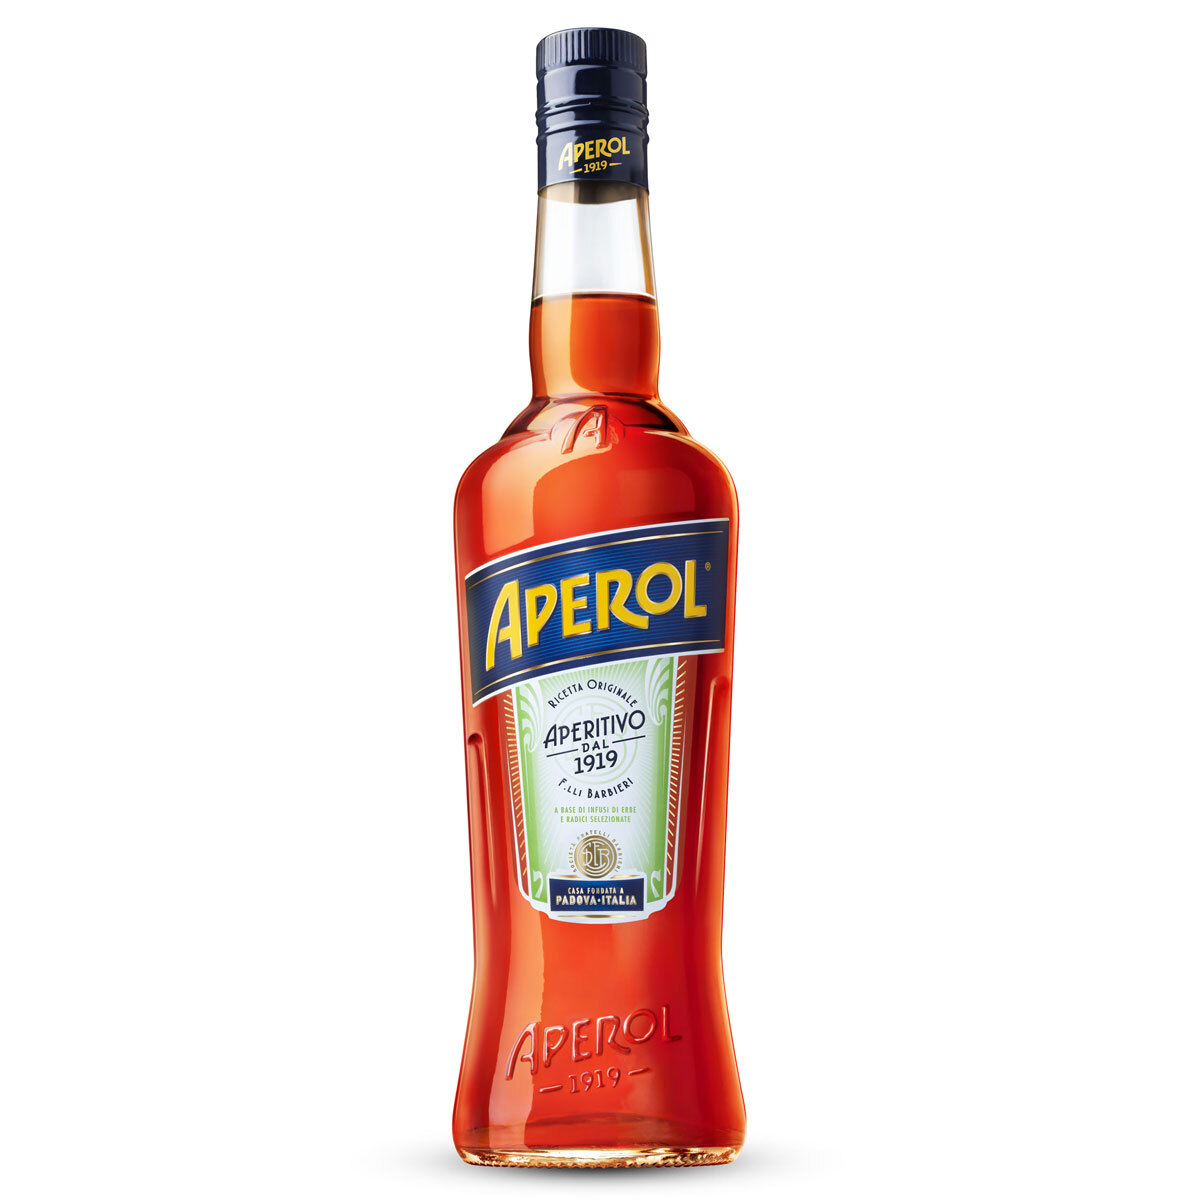 Aperol bottle